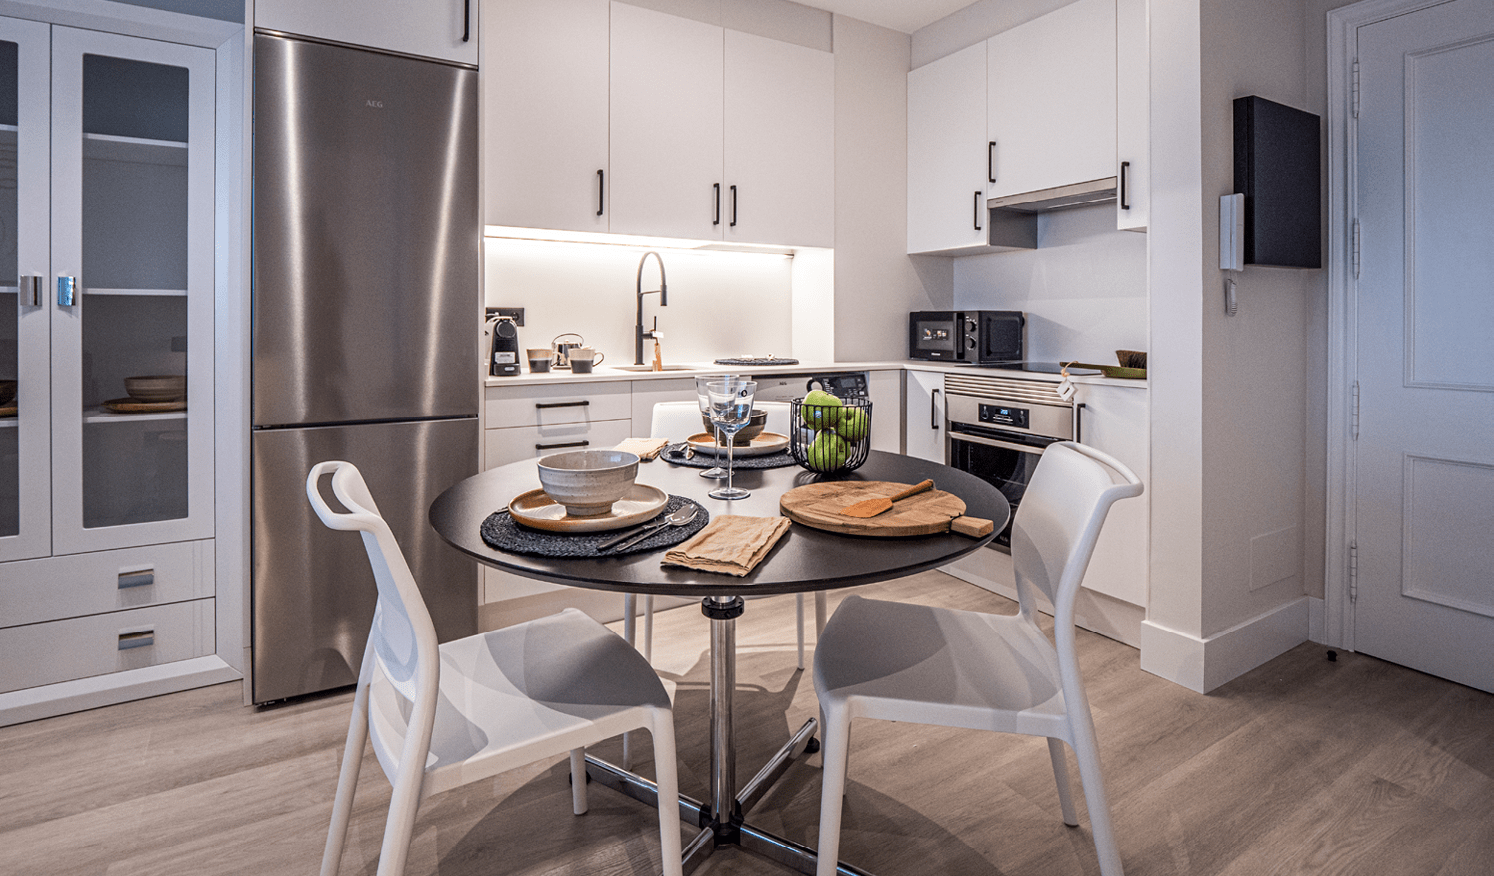 Apartamentos turísticos Montrove_Galeria_Cocina con mobiliario blanco y gris y electrodomesticos en vivienda